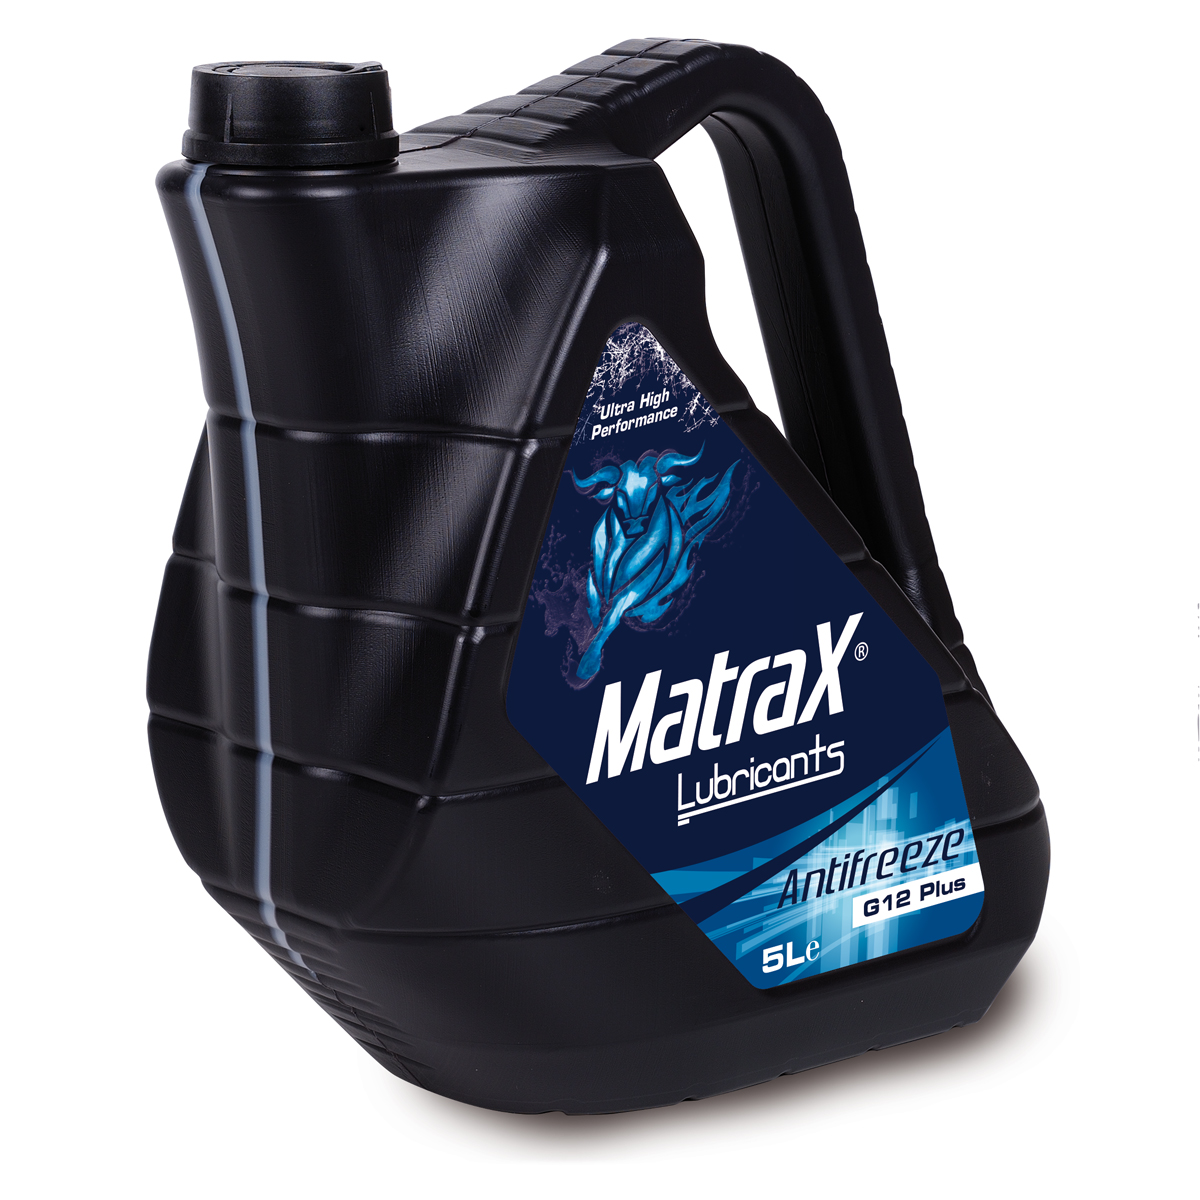 matrax-lubricants-antifreeze-g12-plus-5l